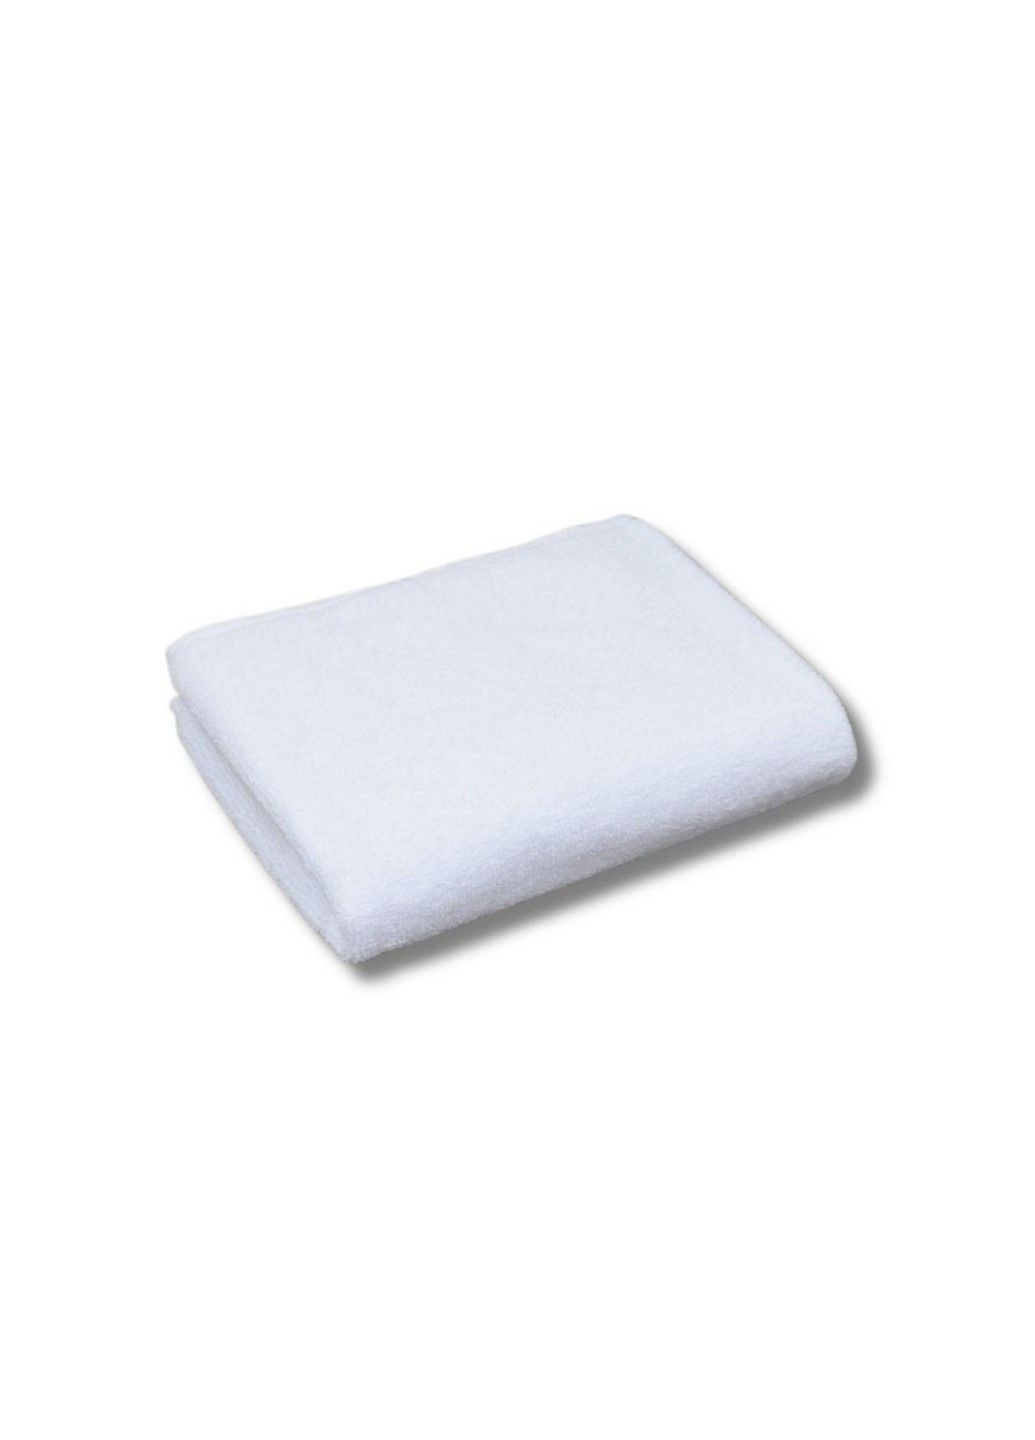 GM Textile полотенце махровое, 40*70 см белый производство - Узбекистан